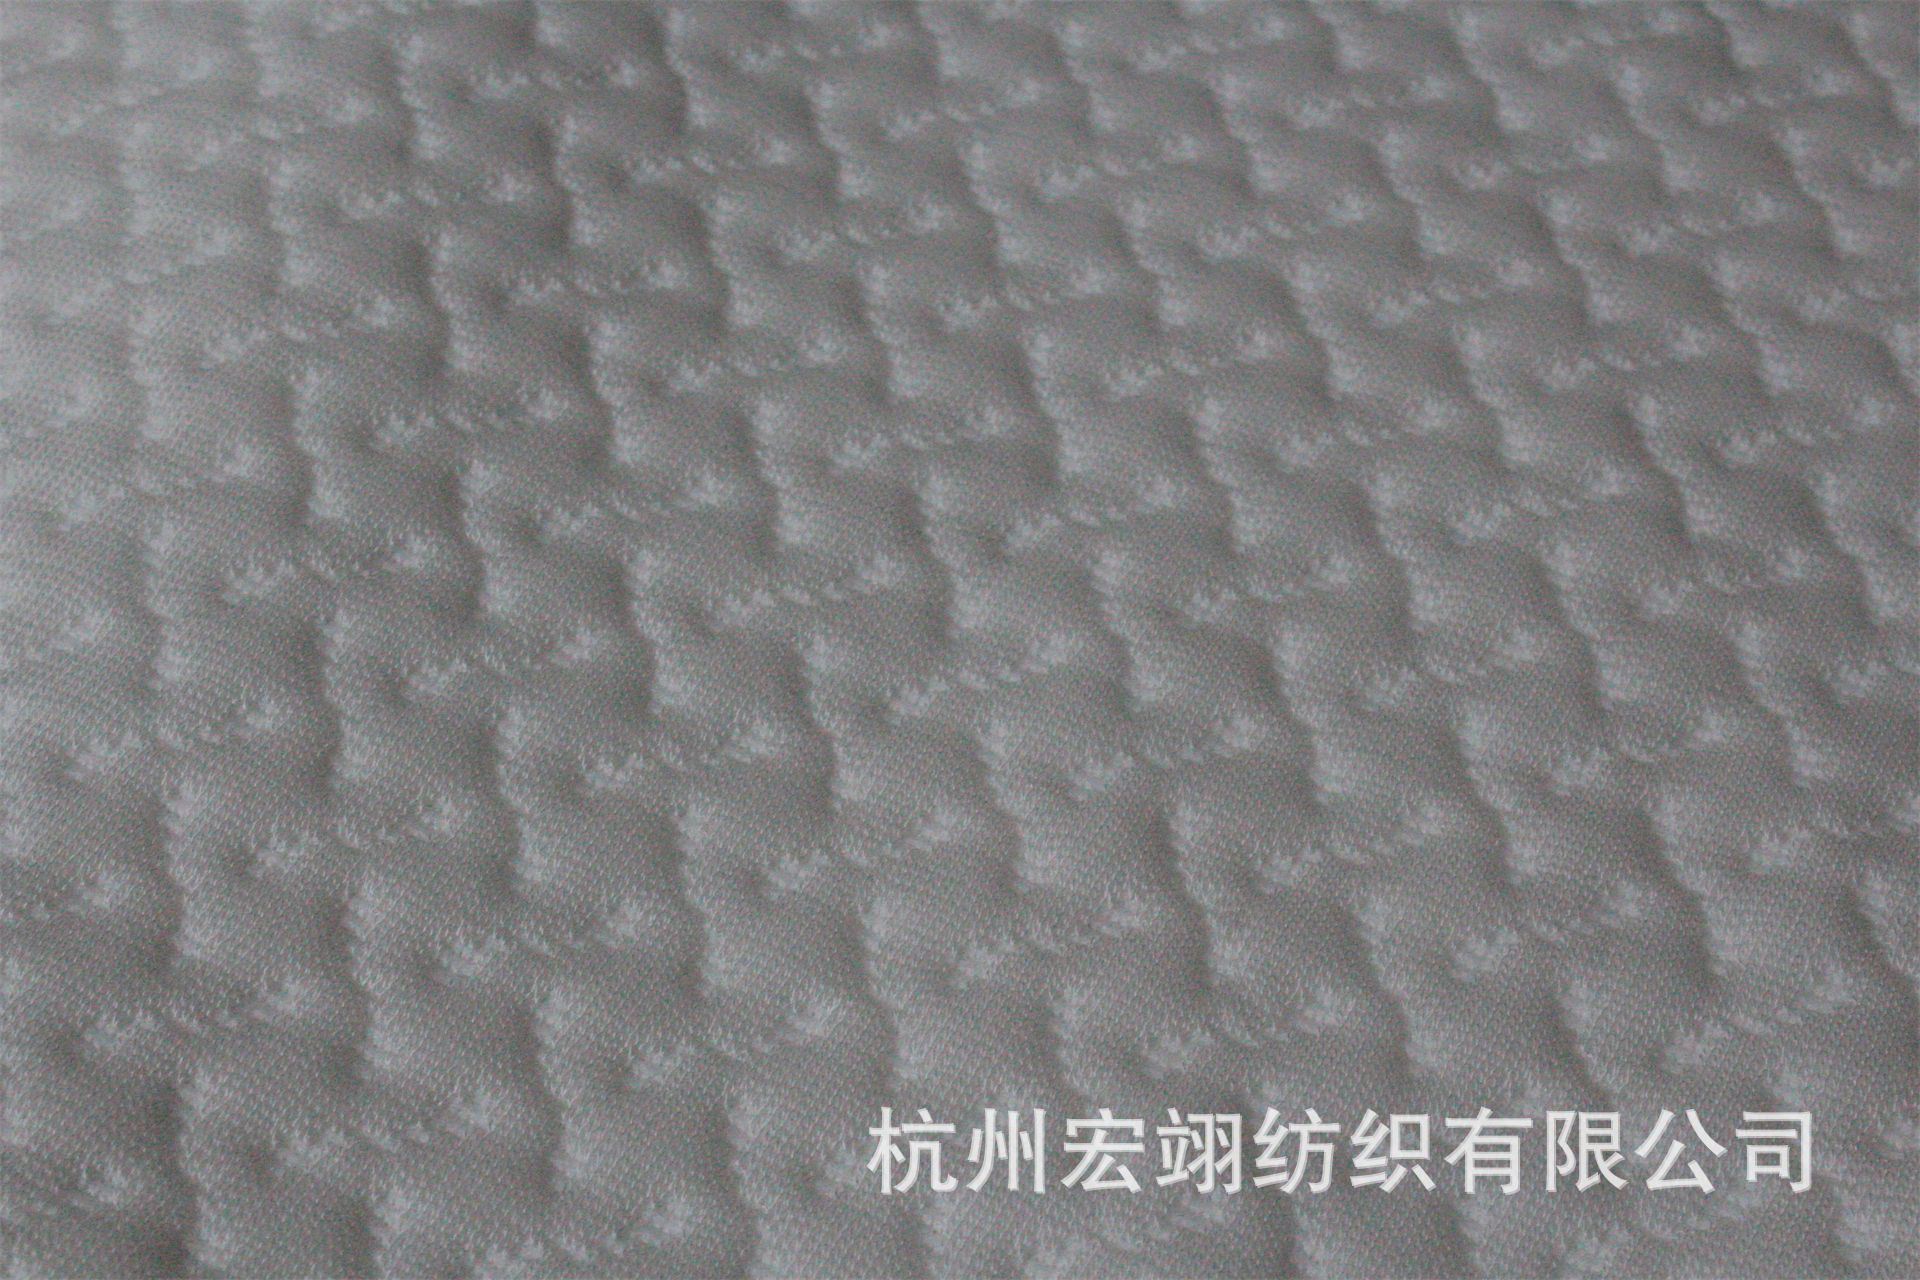 knitting Air layer Latex pillow Memory foam pillow pillow case Fabric pillowcase mattress Seat cushion Cushion pregnant woman